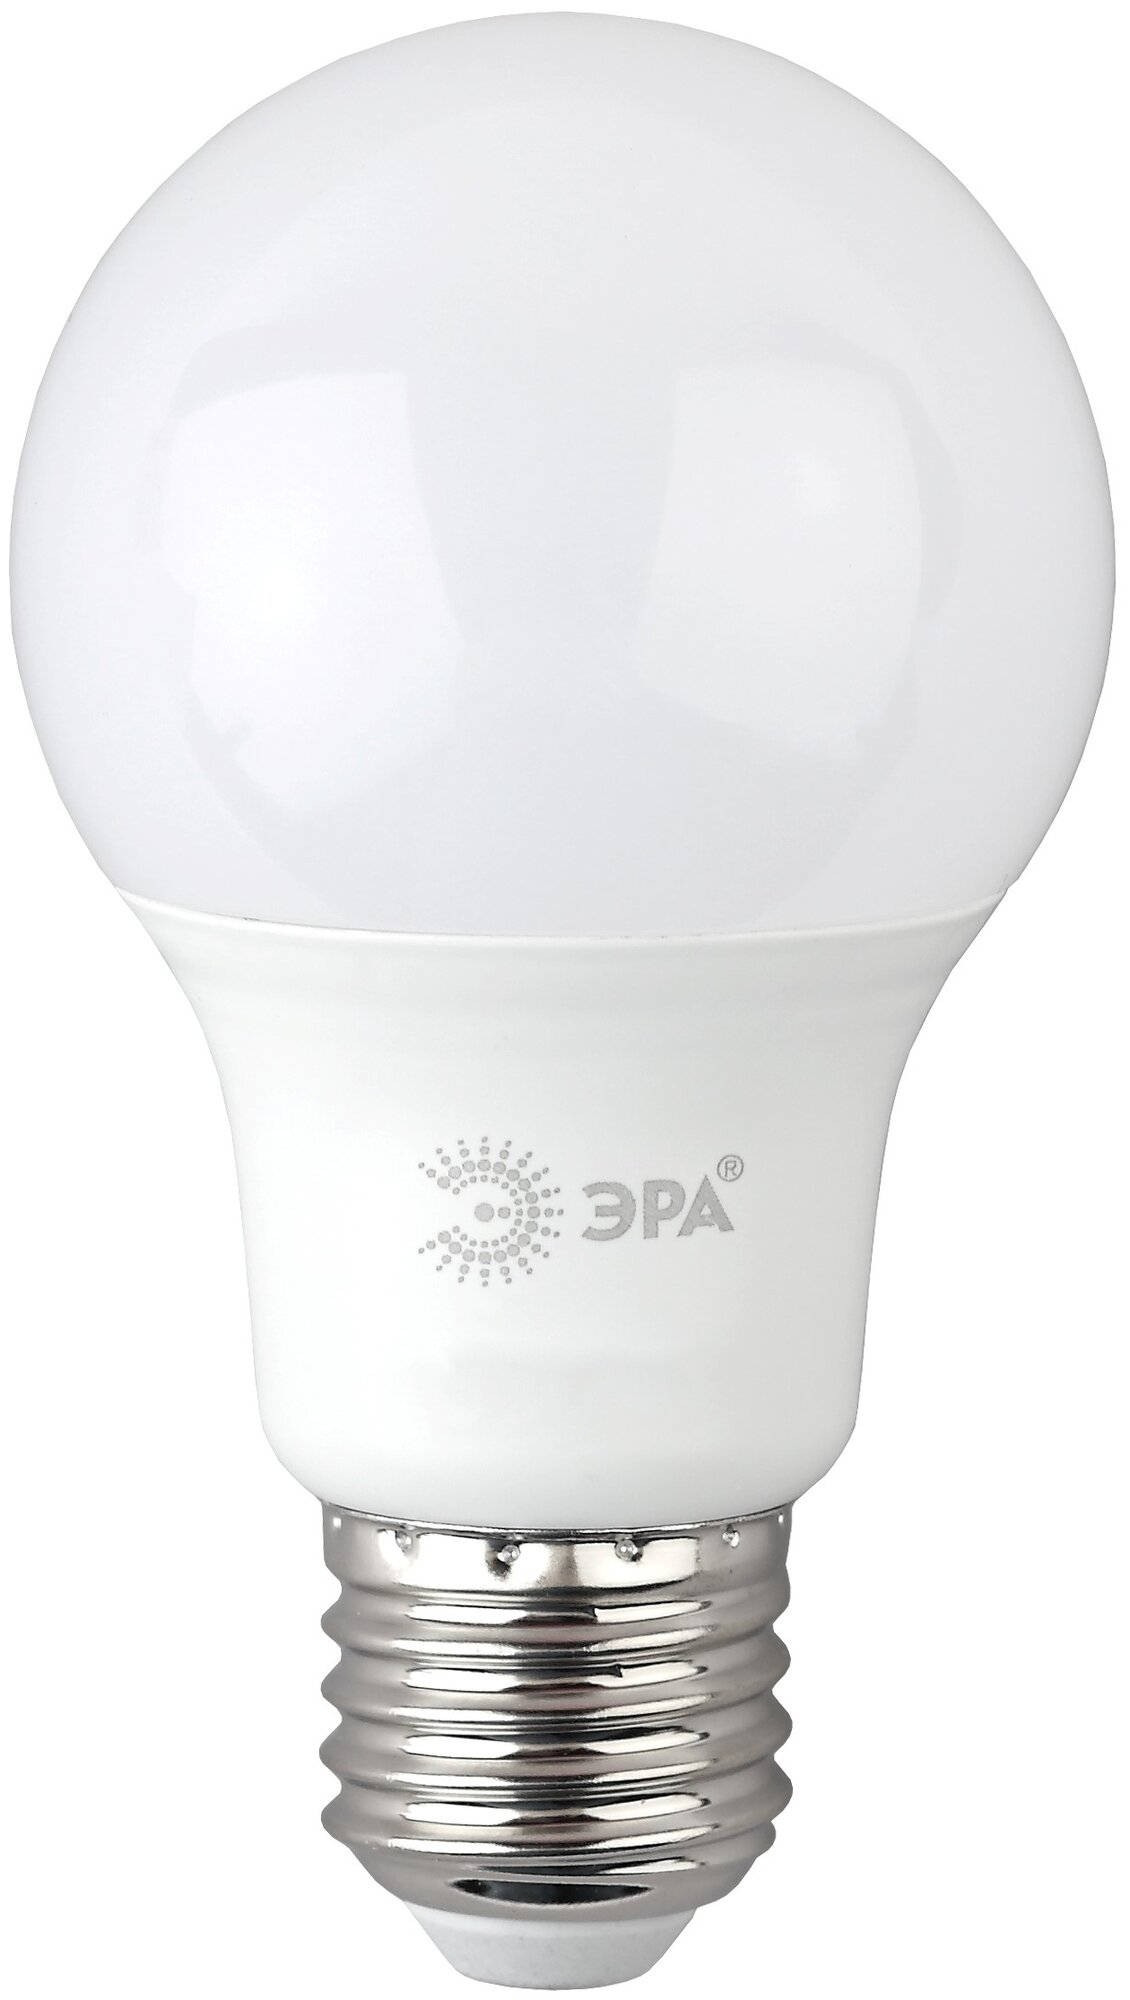 Лампа светодиодная ЭРА LED A60-10W-865-E27 R (диод, груша, 10Вт, хол, E27)